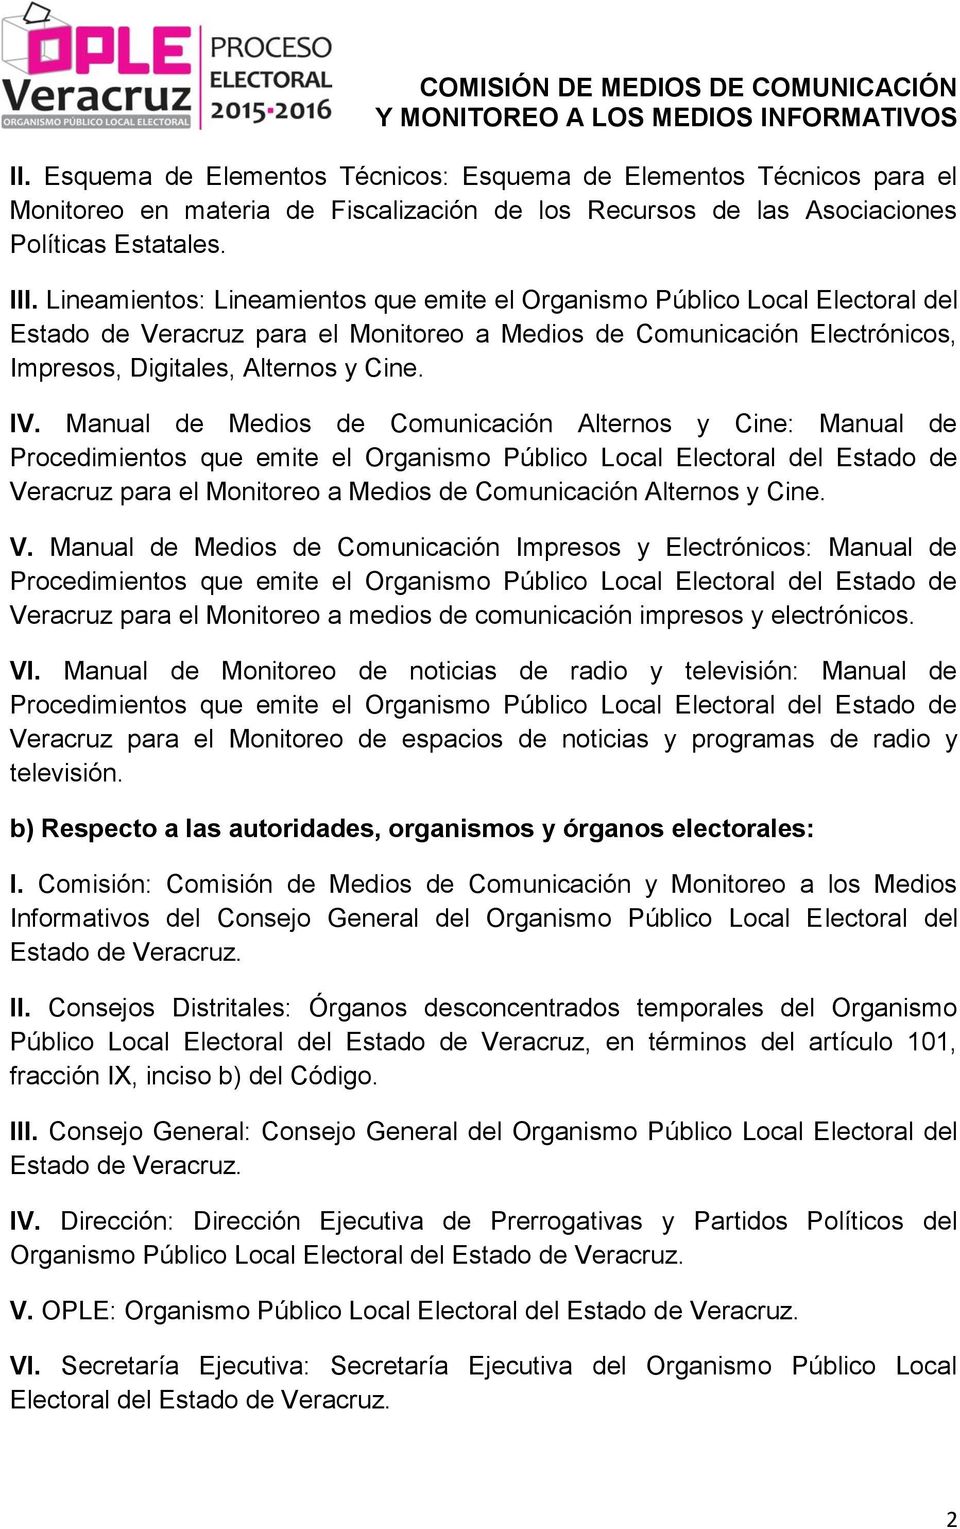 Manual de Medios de Comunicación Alternos y Cine: Manual de Procedimientos que emite el Organismo Público Local Electoral del Estado de Veracruz para el Monitoreo a Medios de Comunicación Alternos y